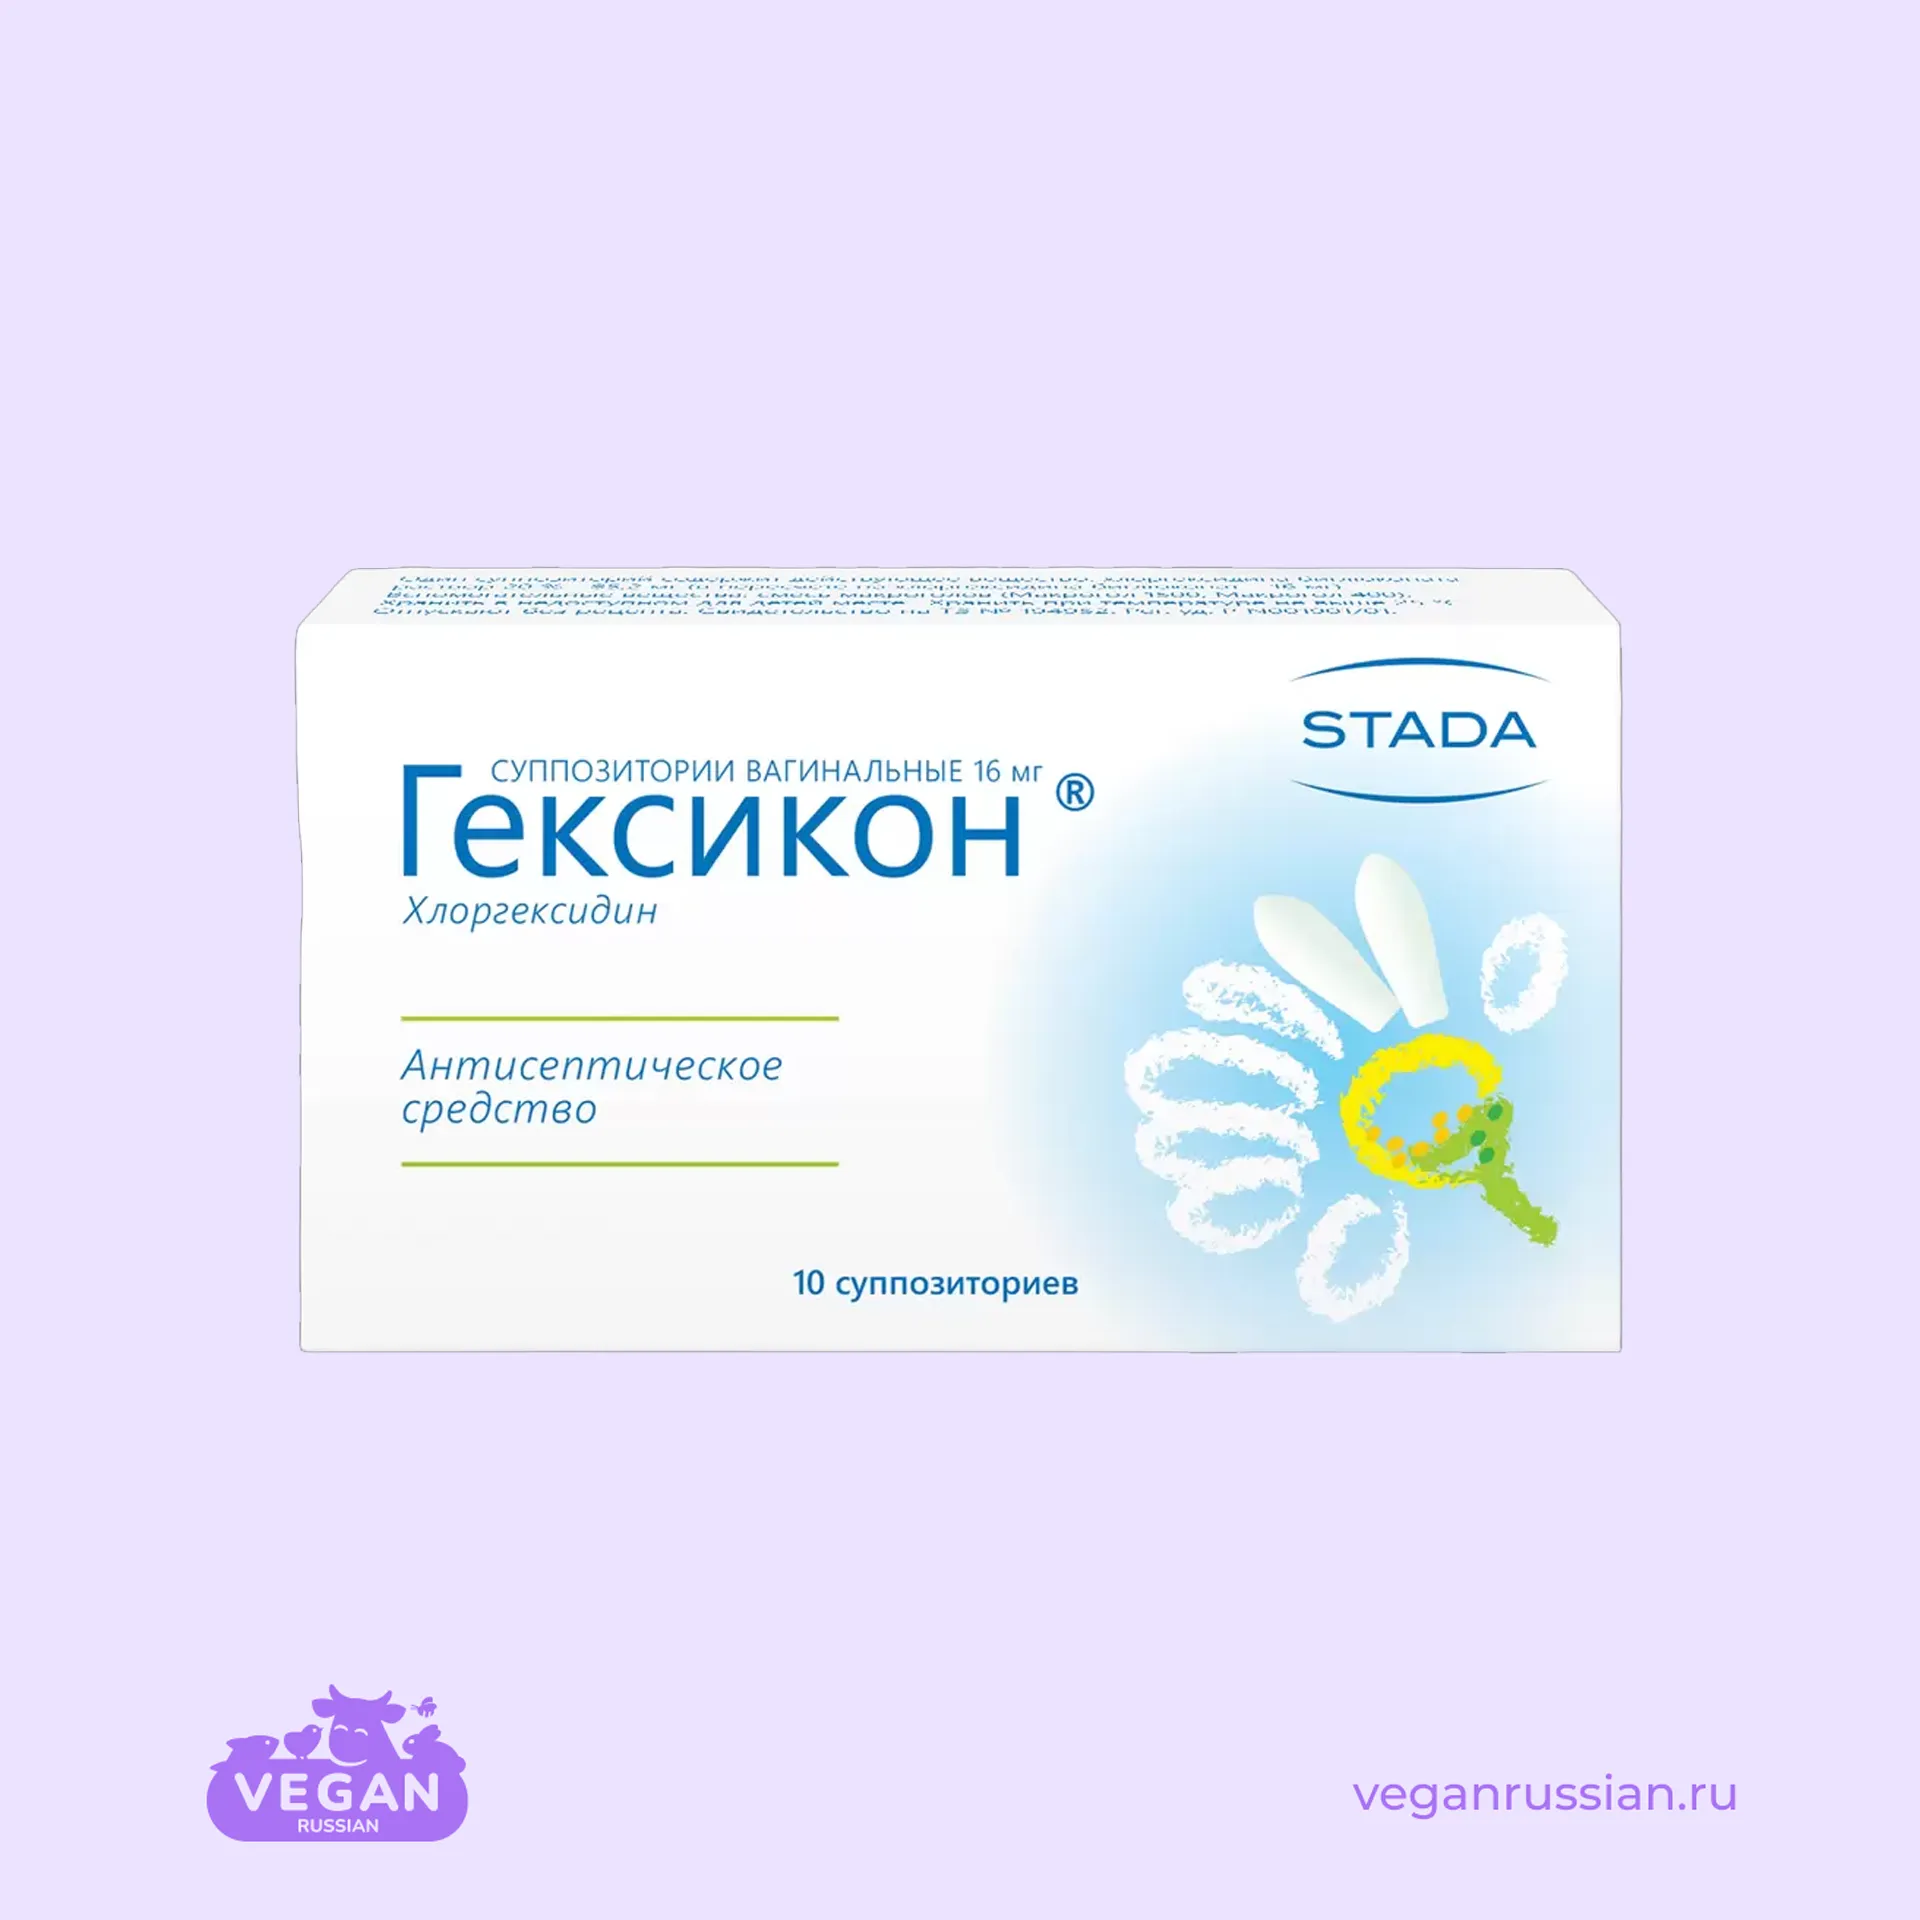 Суппозитории вагинальные Гексикон STADA 10 шт 16 мг